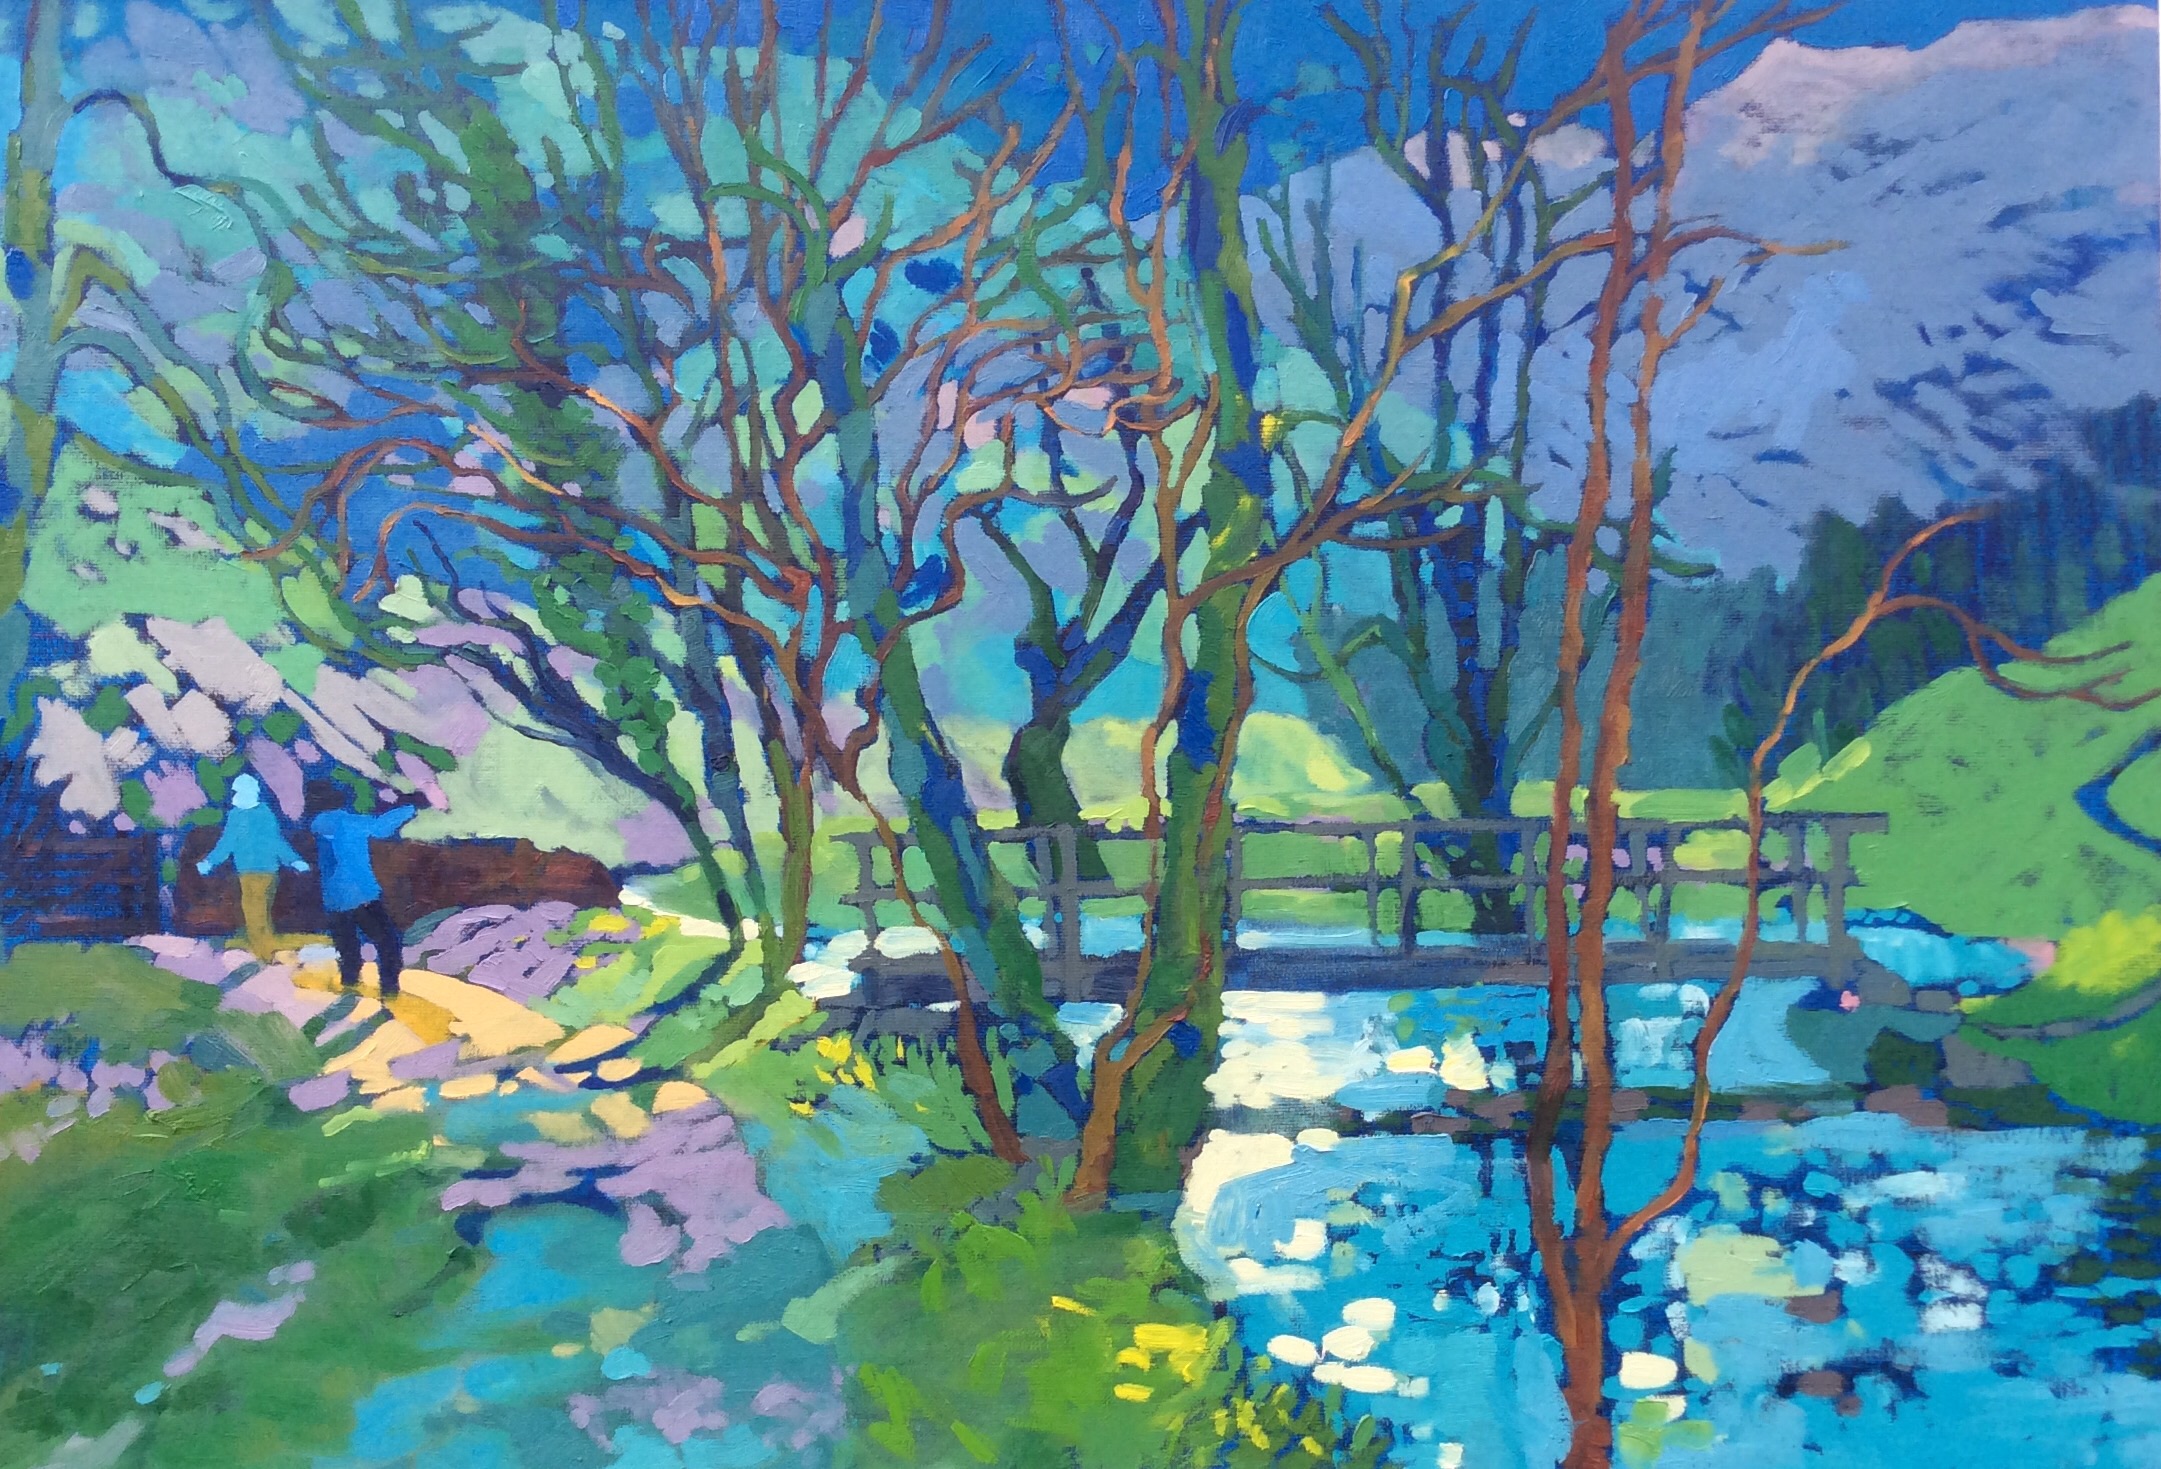 Twilight Walk, River Dove. Oil on canvas. 70 x 100 cm. (sold)